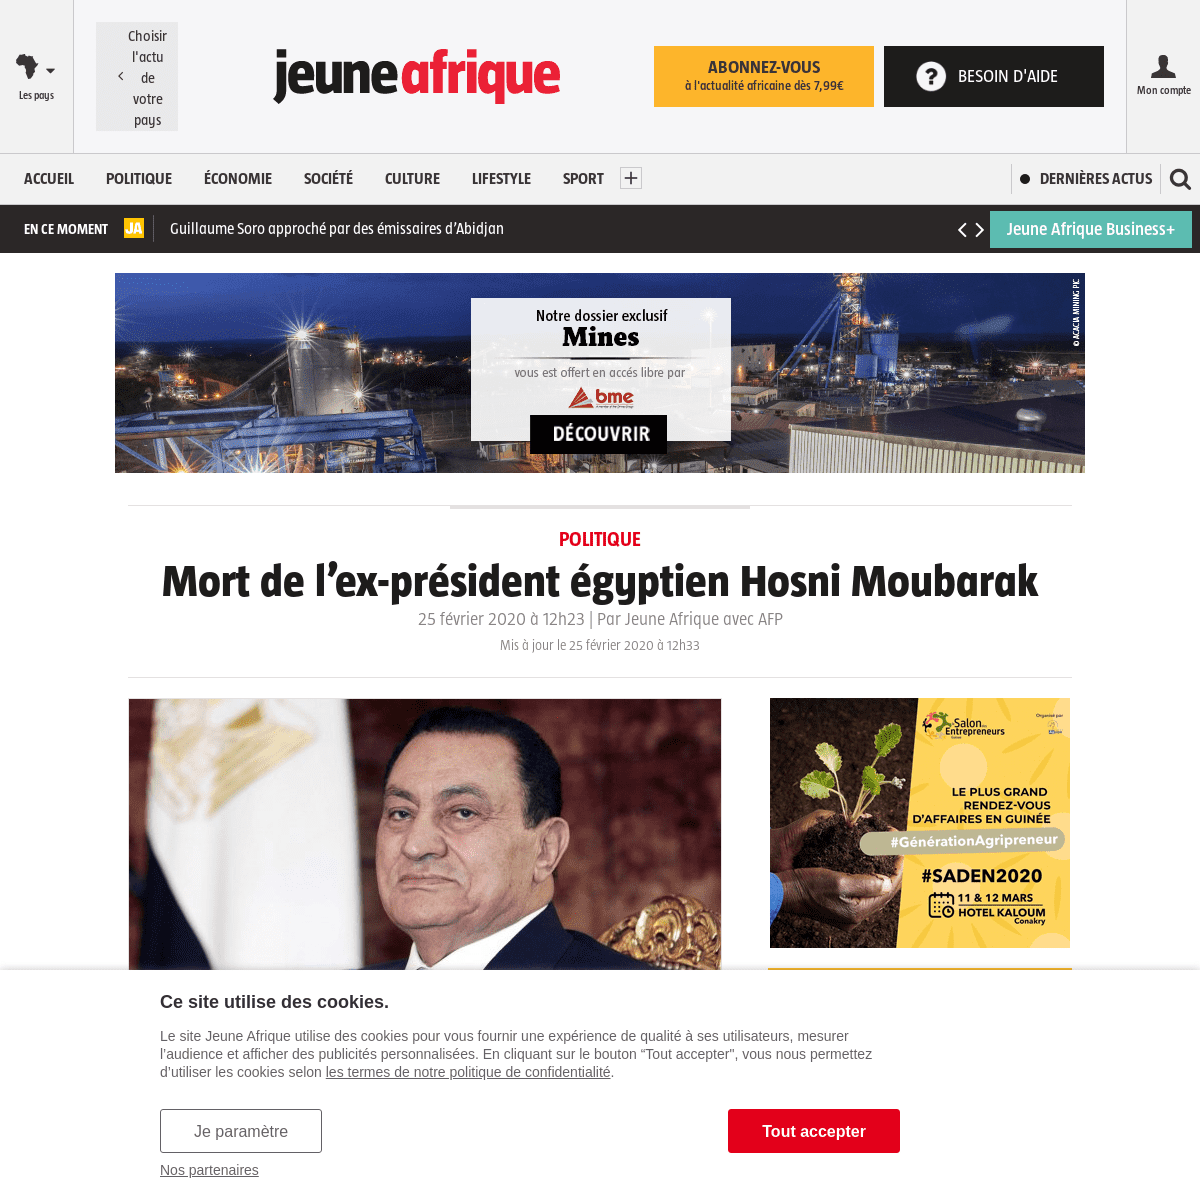 A complete backup of www.jeuneafrique.com/901681/politique/mort-de-lex-president-egyptien-hosni-moubarak/